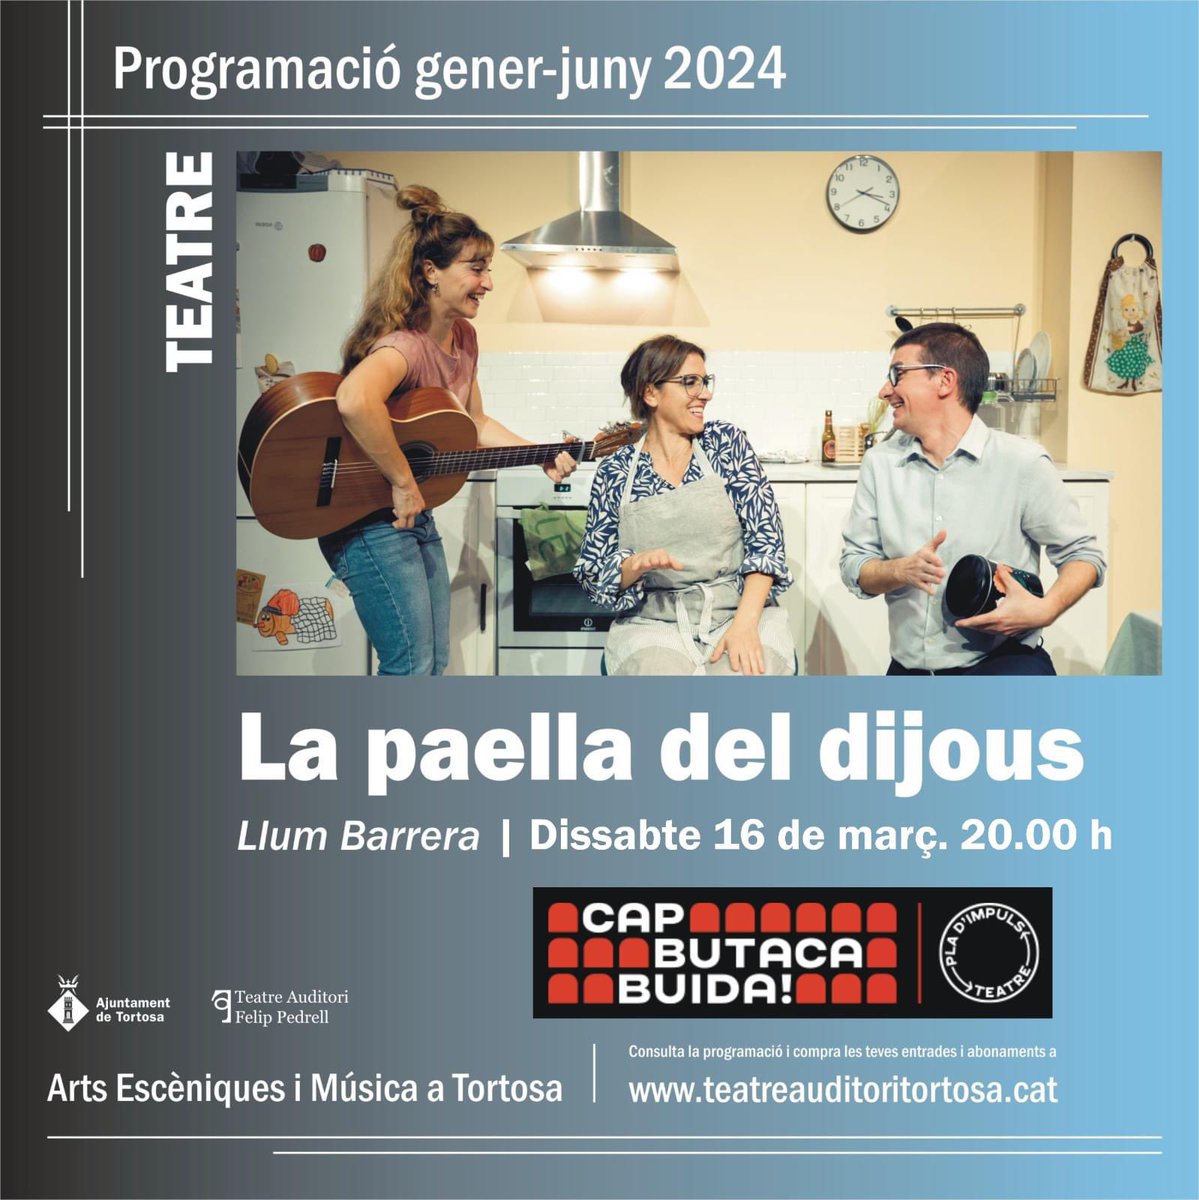 CULTURA | 🎭Avui ens sumem a la campanya ‘Cap butaca buida’, omplim el Teatre Auditori Felip Pedrell i contribuïm a fer Catalunya capital mundial de les arts escèniques